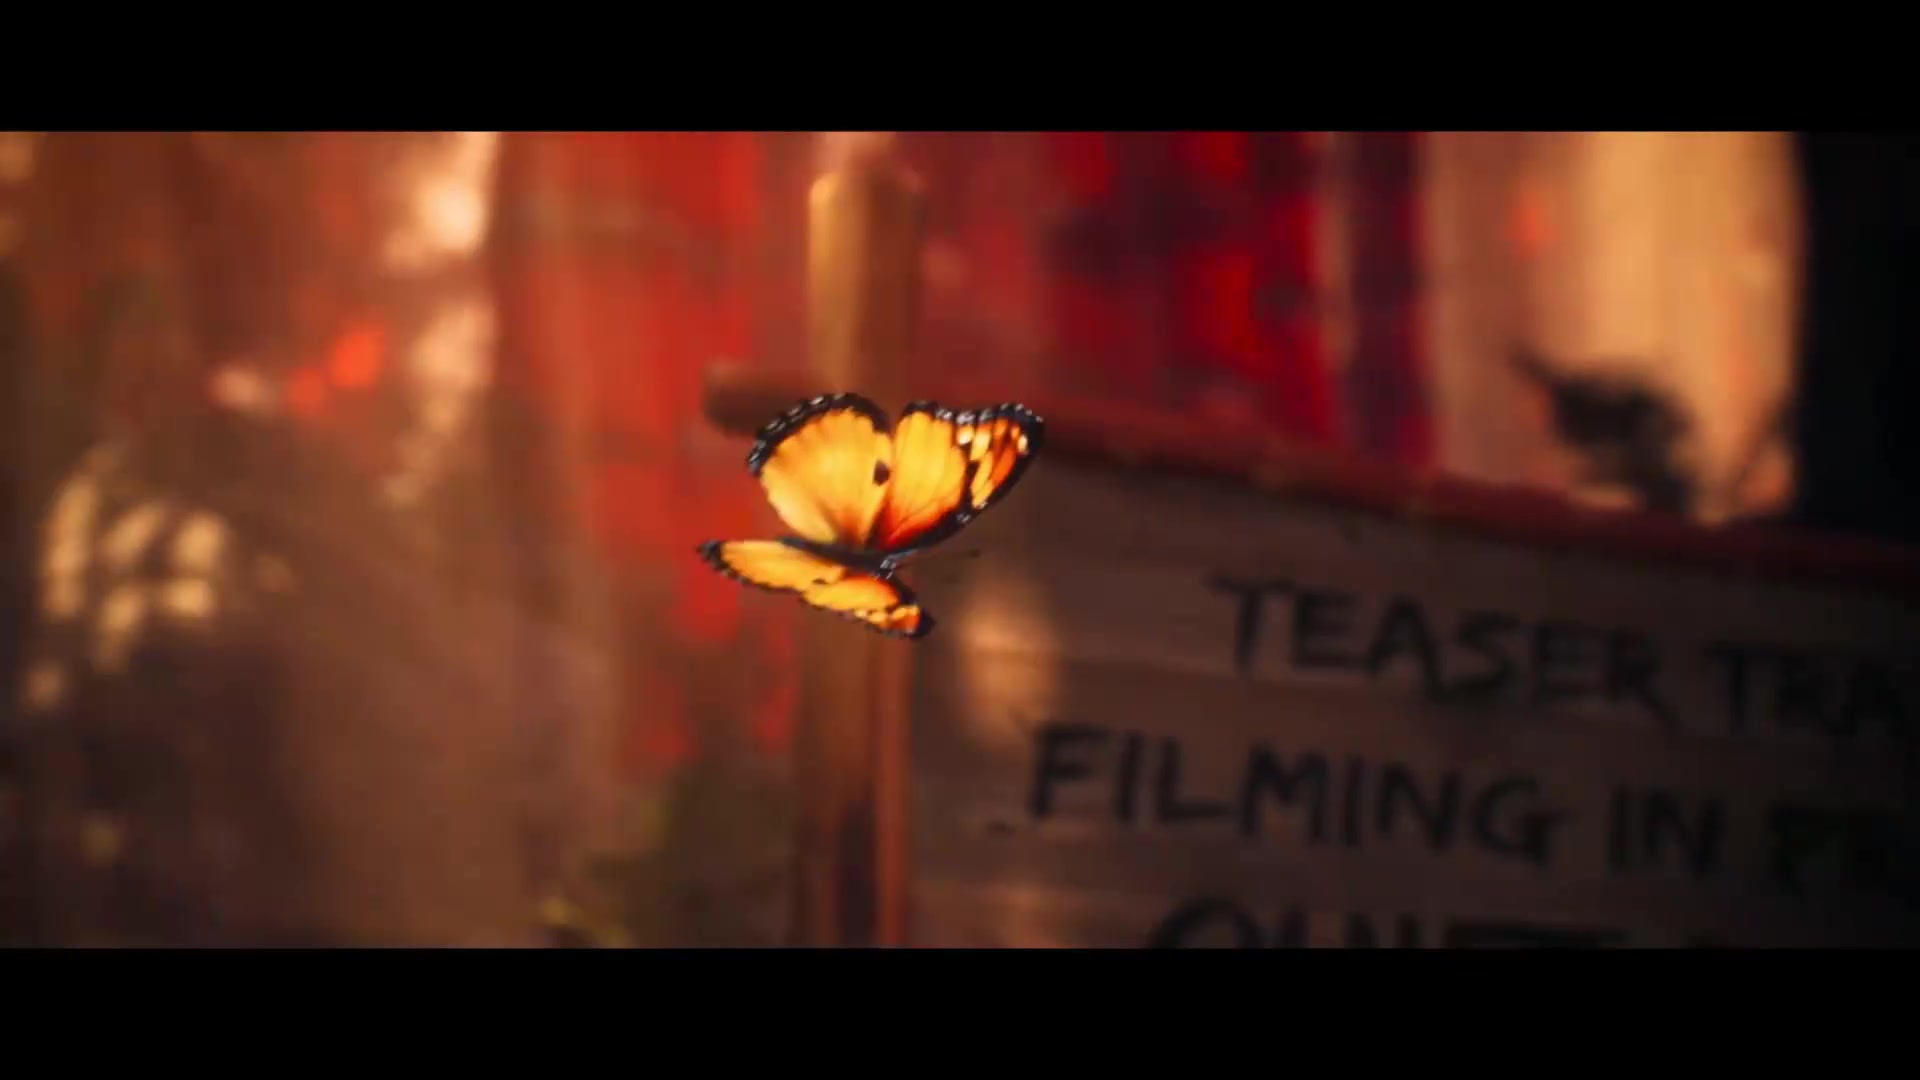 《影子武士3》正式公布 中文先导宣传片分享